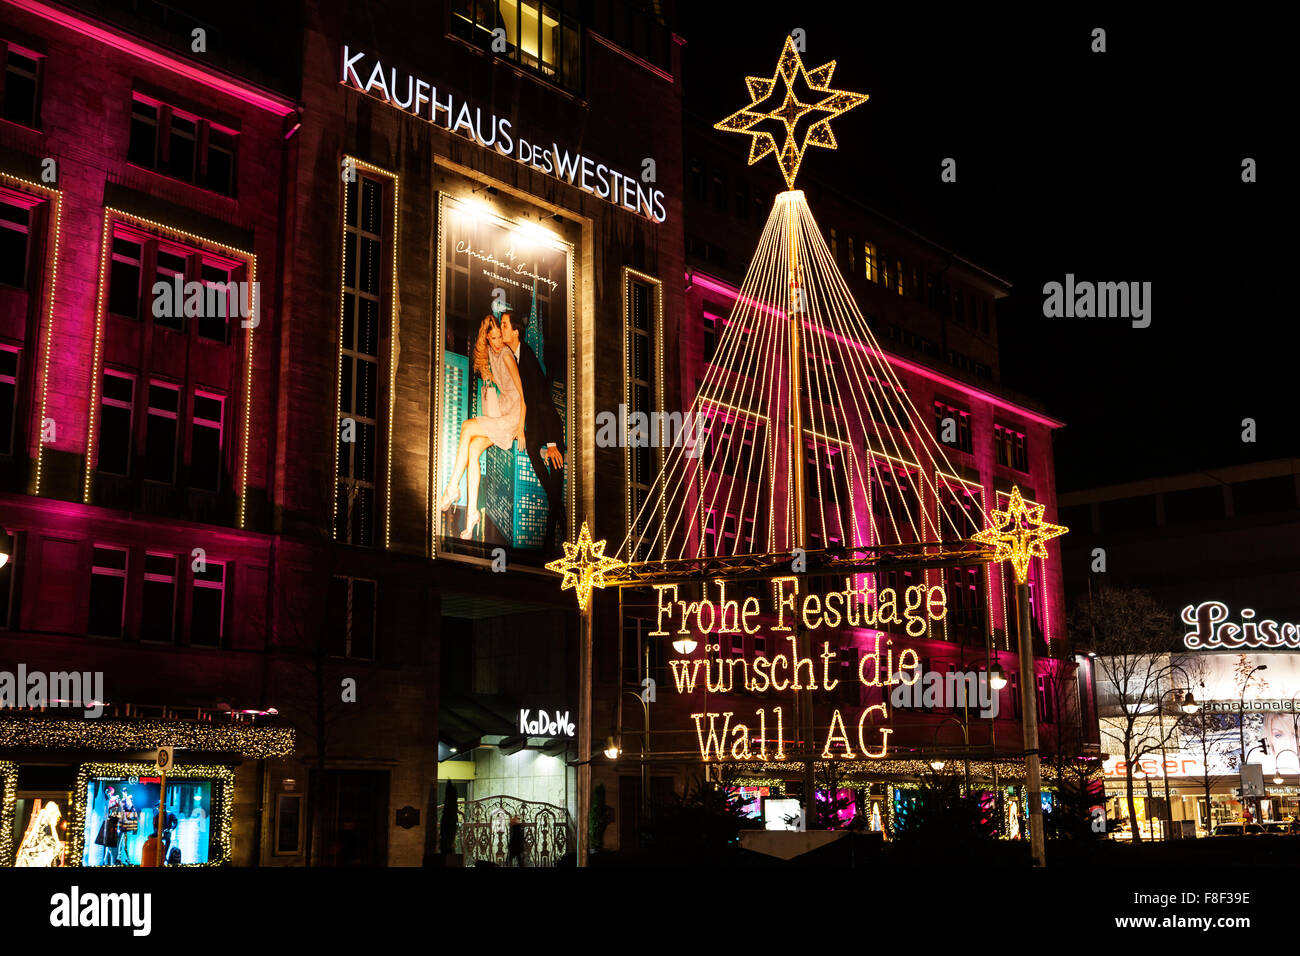 Kaufhaus des Westens und Werbung für die Wall AG in der Weihnachtszeit in Berlin Deutschland Stockfoto